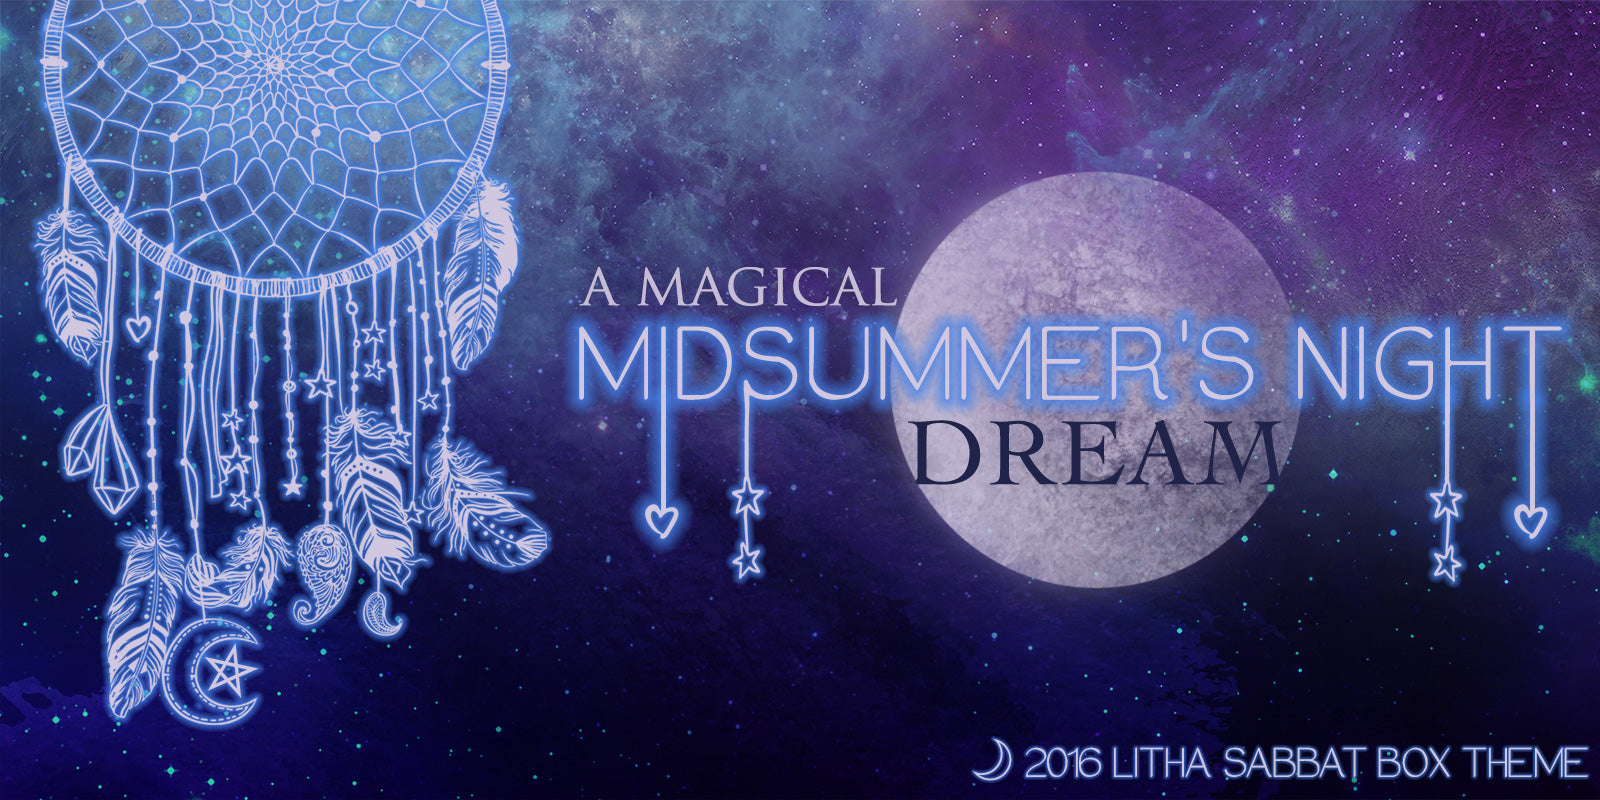 Litha - Midsummer Sabbat Box Theme - A Magical Midsummer's Night Dream